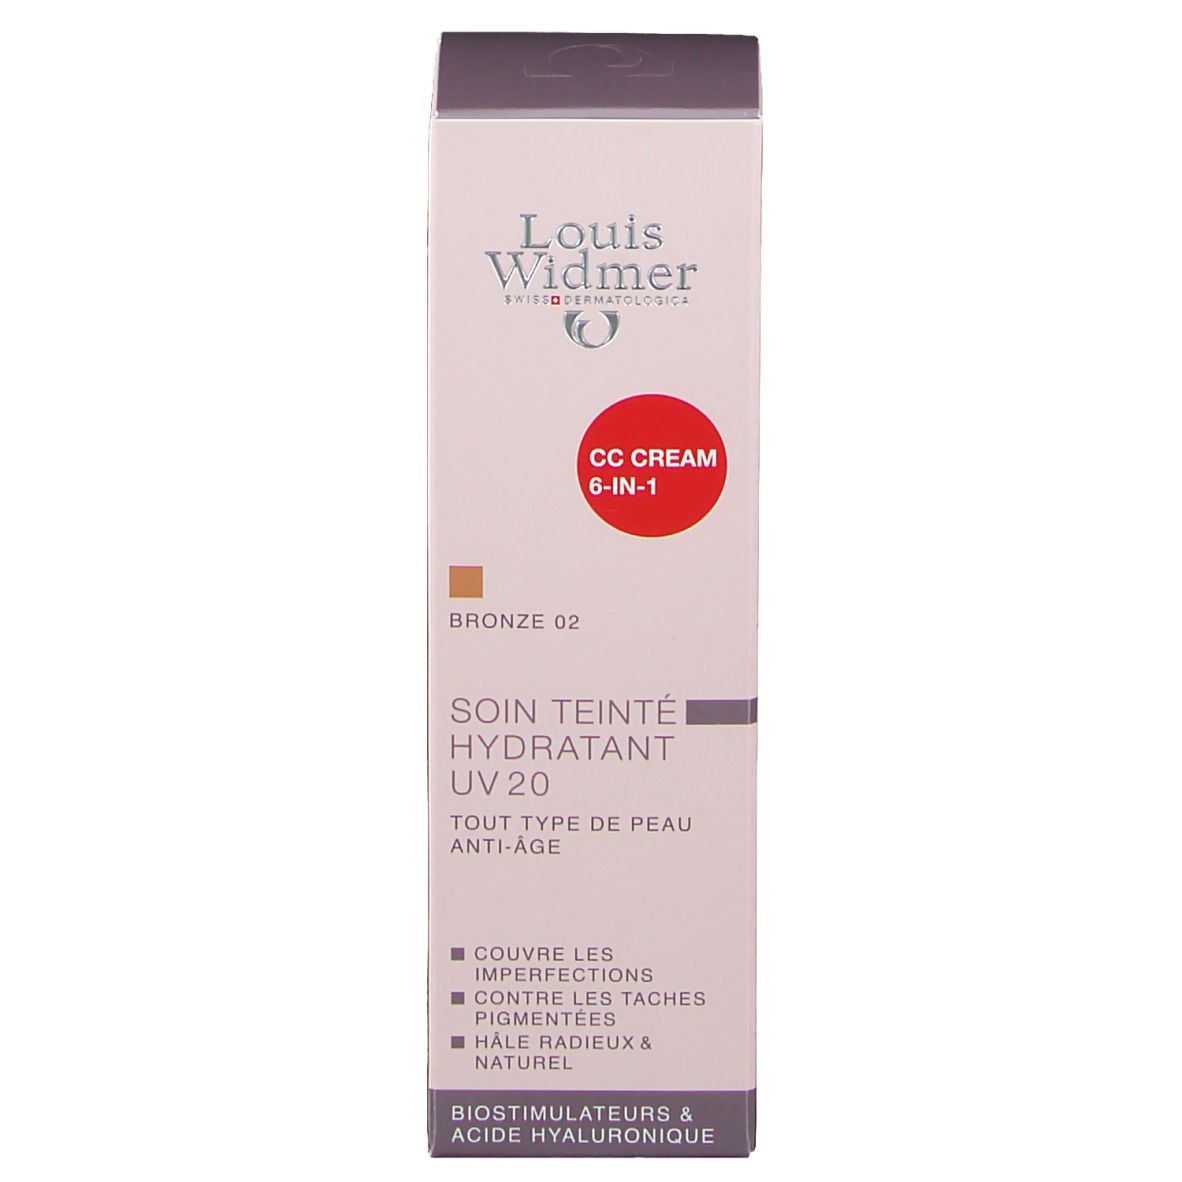 Louis Widmer Getönte Feuchtigkeitspflege UV 20 CC Cream Bronze leicht parfümiert